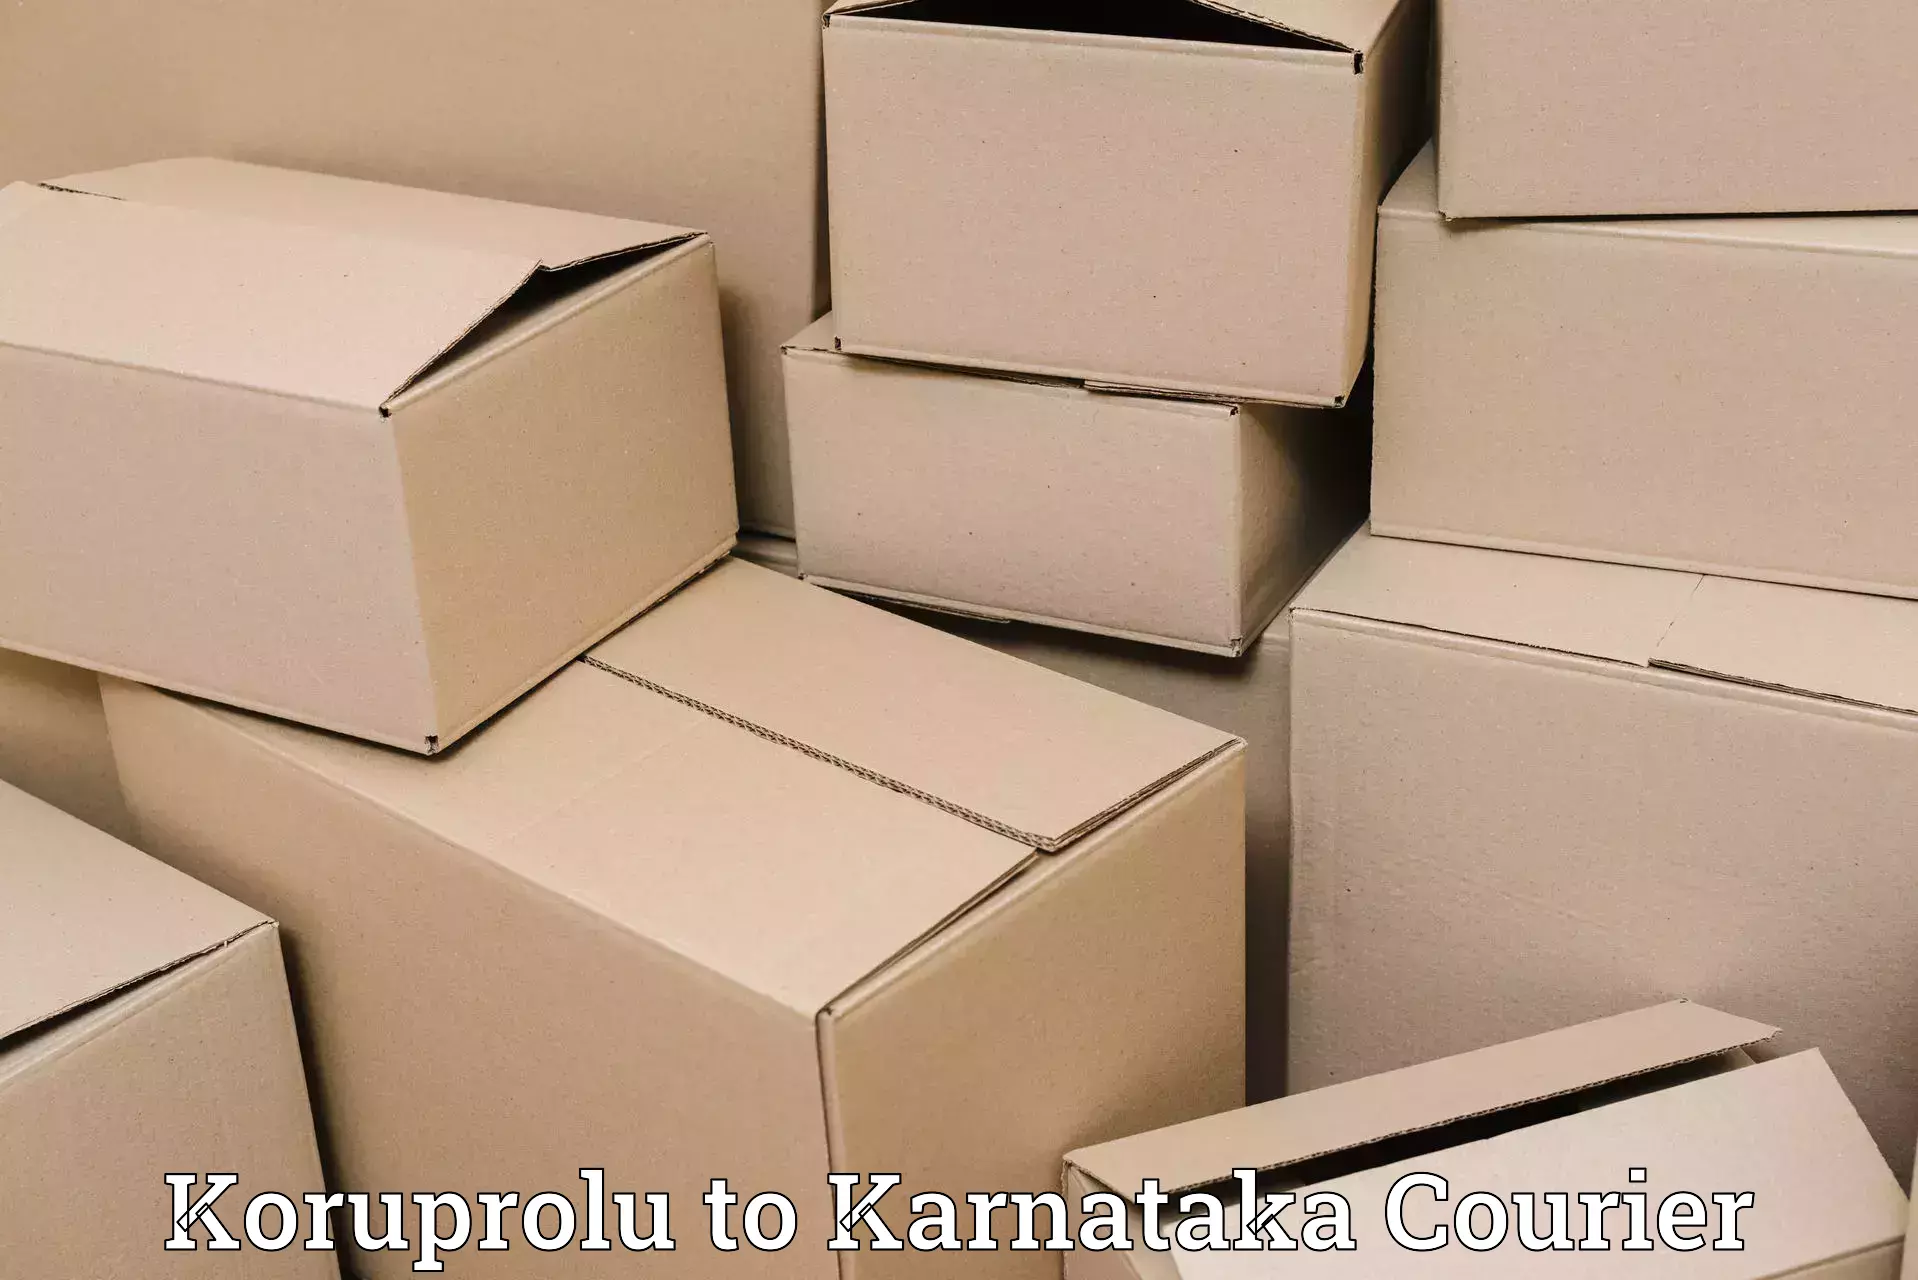 Courier service booking Koruprolu to Saundatti Yallamma